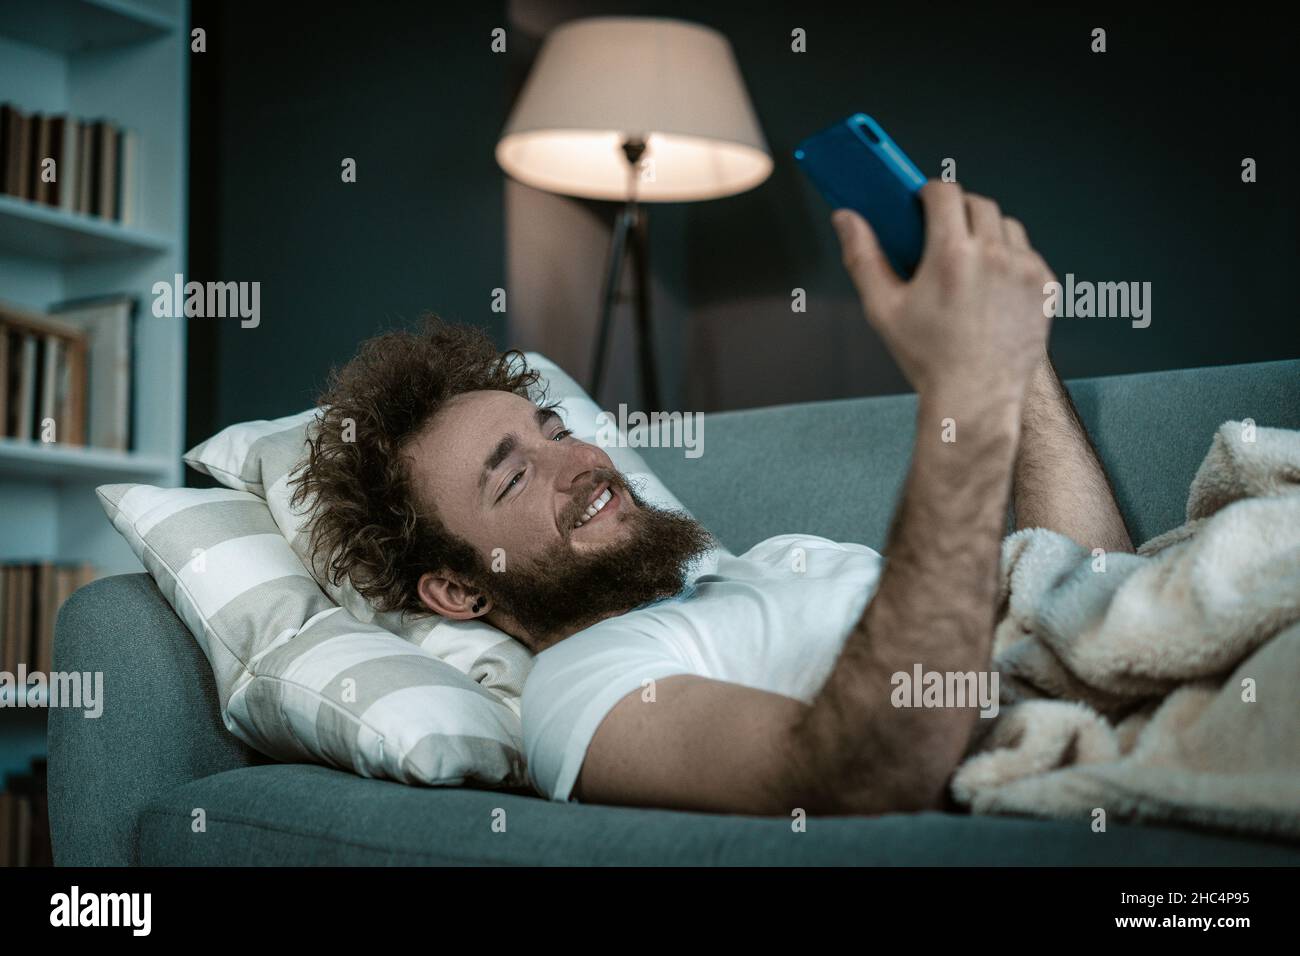 Shapely Guy regarde ses séries préférées sur son téléphone avant d'aller dormir.Il regarde les séries toute la nuit dans son lit.Gros plan.Photo de haute qualité Banque D'Images